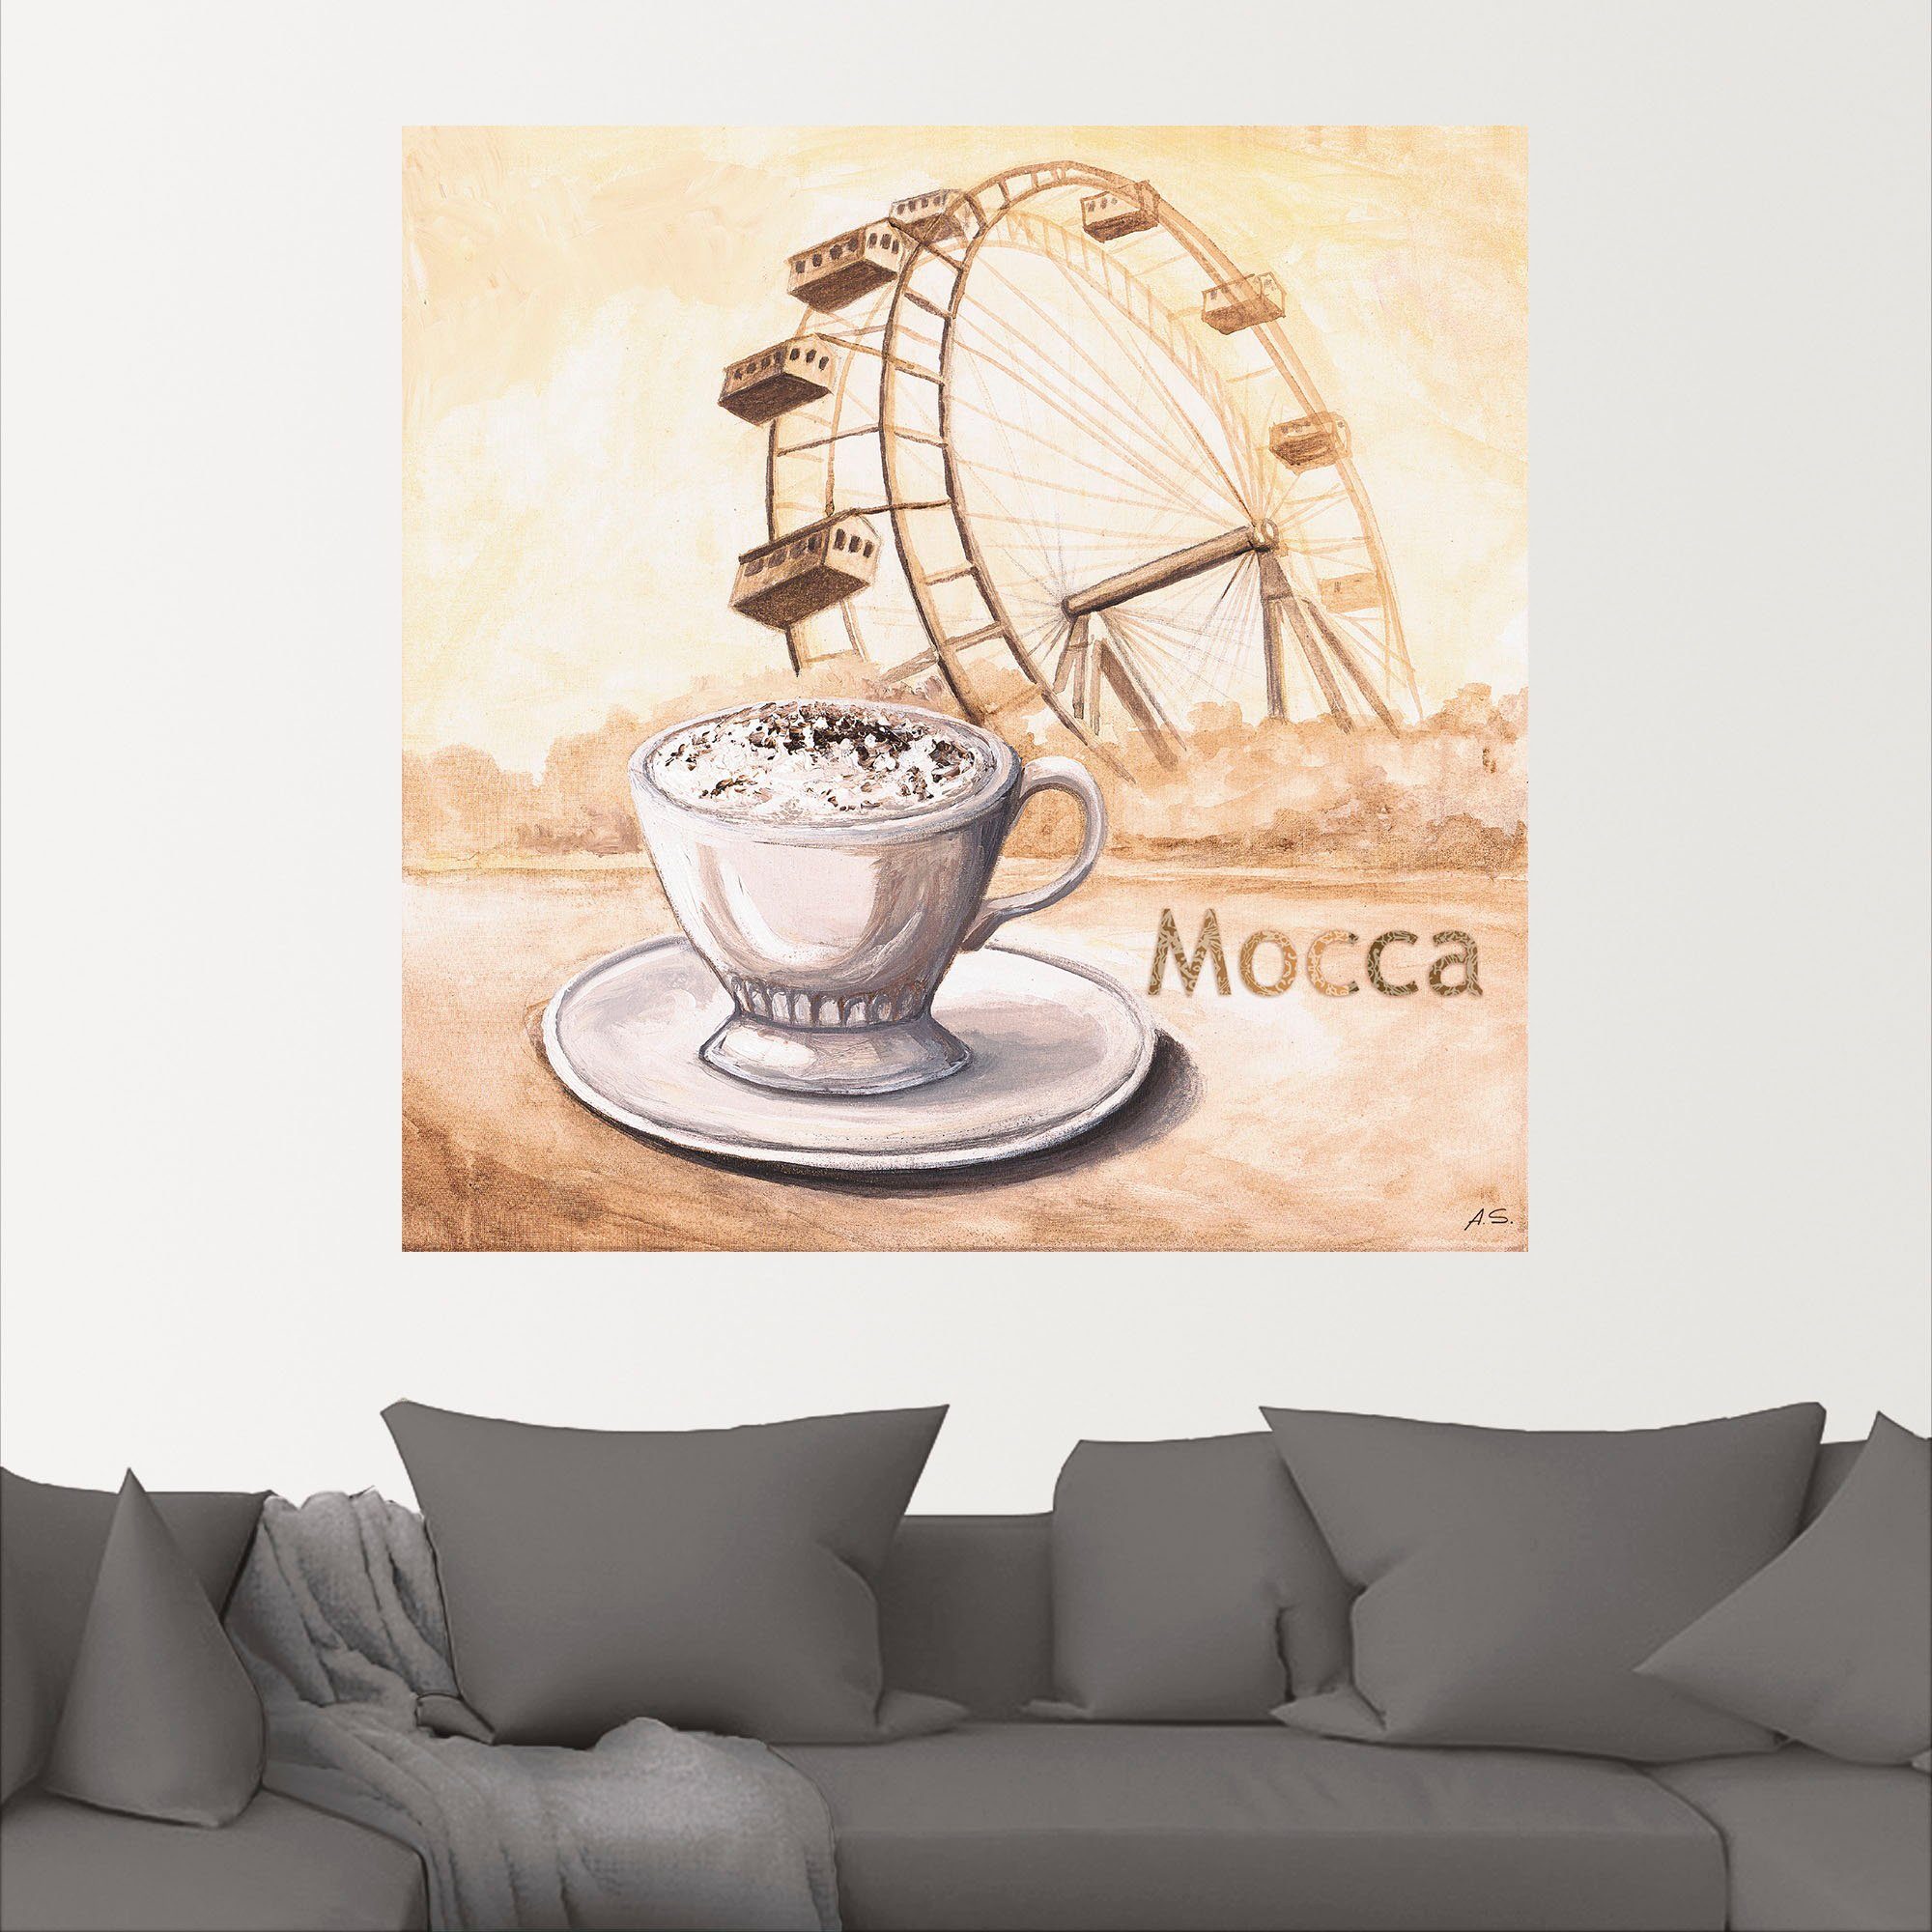 oder (1 versch. Wandbild in Wien, Mocca Bilder Alubild, Kaffee St), Leinwandbild, als Artland Wandaufkleber in Poster Größen